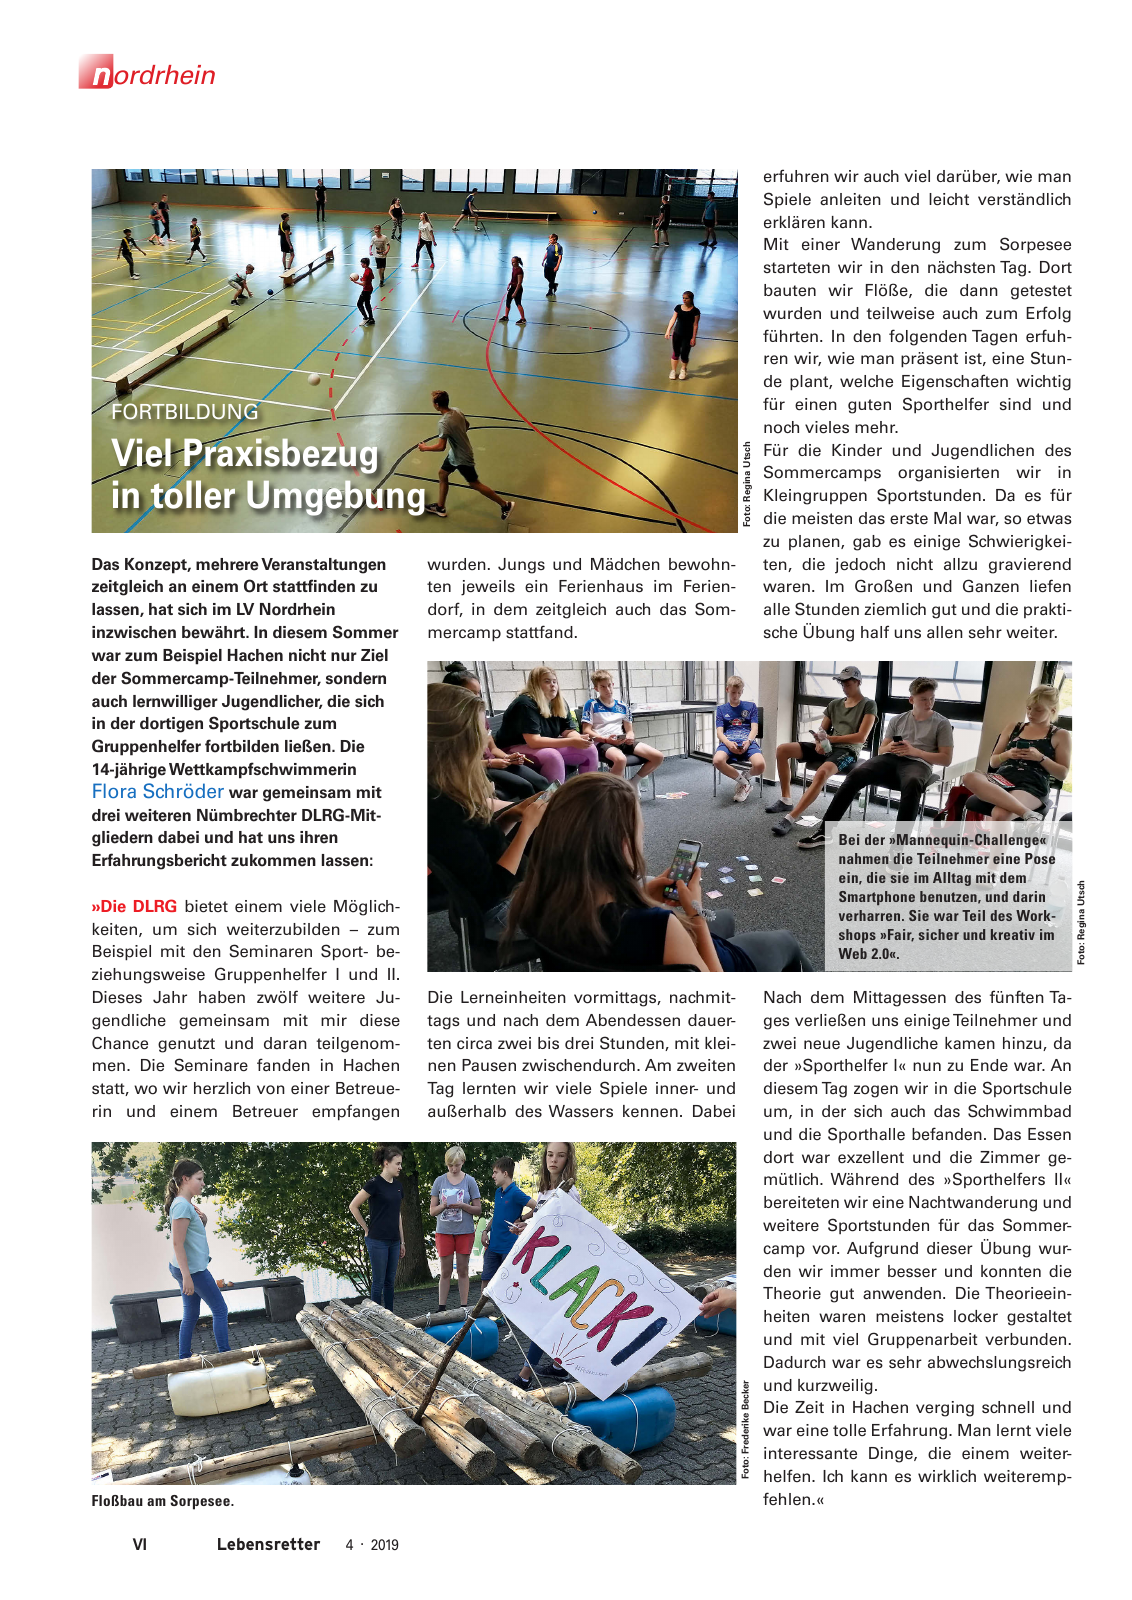 Vorschau Lebensretter 4/2019 -  Nordrhein Regionalausgabe Seite 8